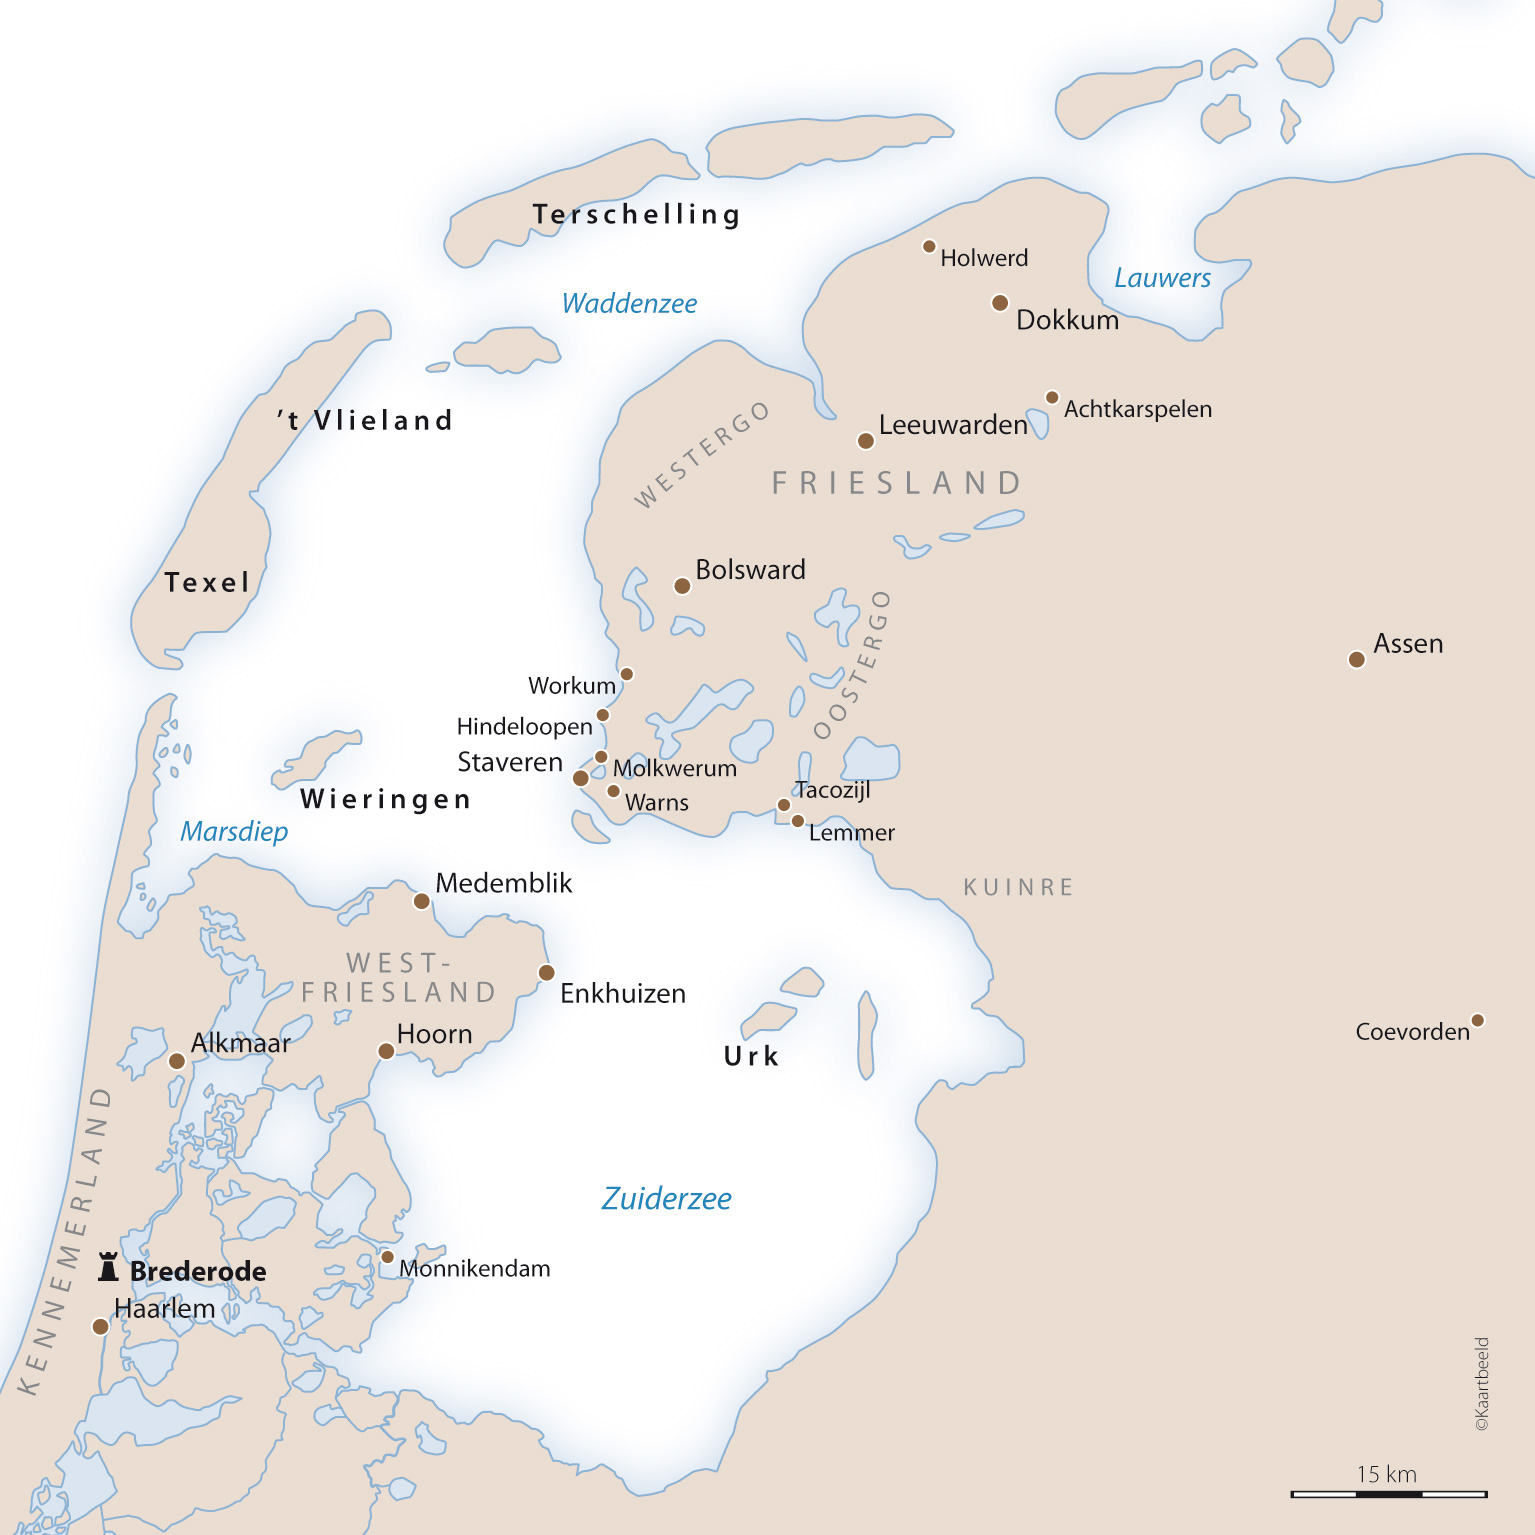 West-Friesland en Friesland aan weerszijden van de Zuiderzee